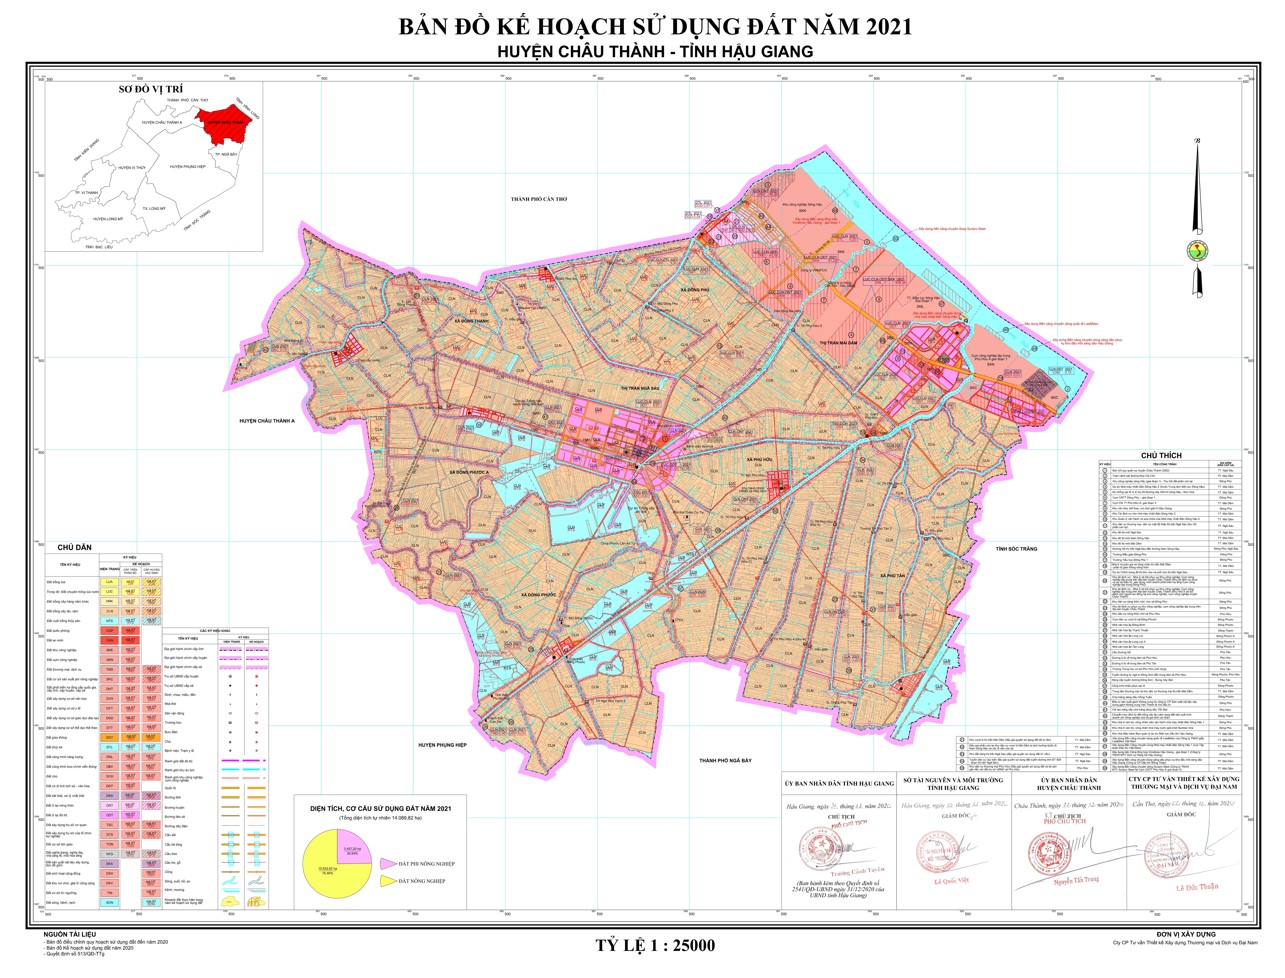 Bản đồ quy hoạch huyện Châu Thành, tỉnh Hậu Giang